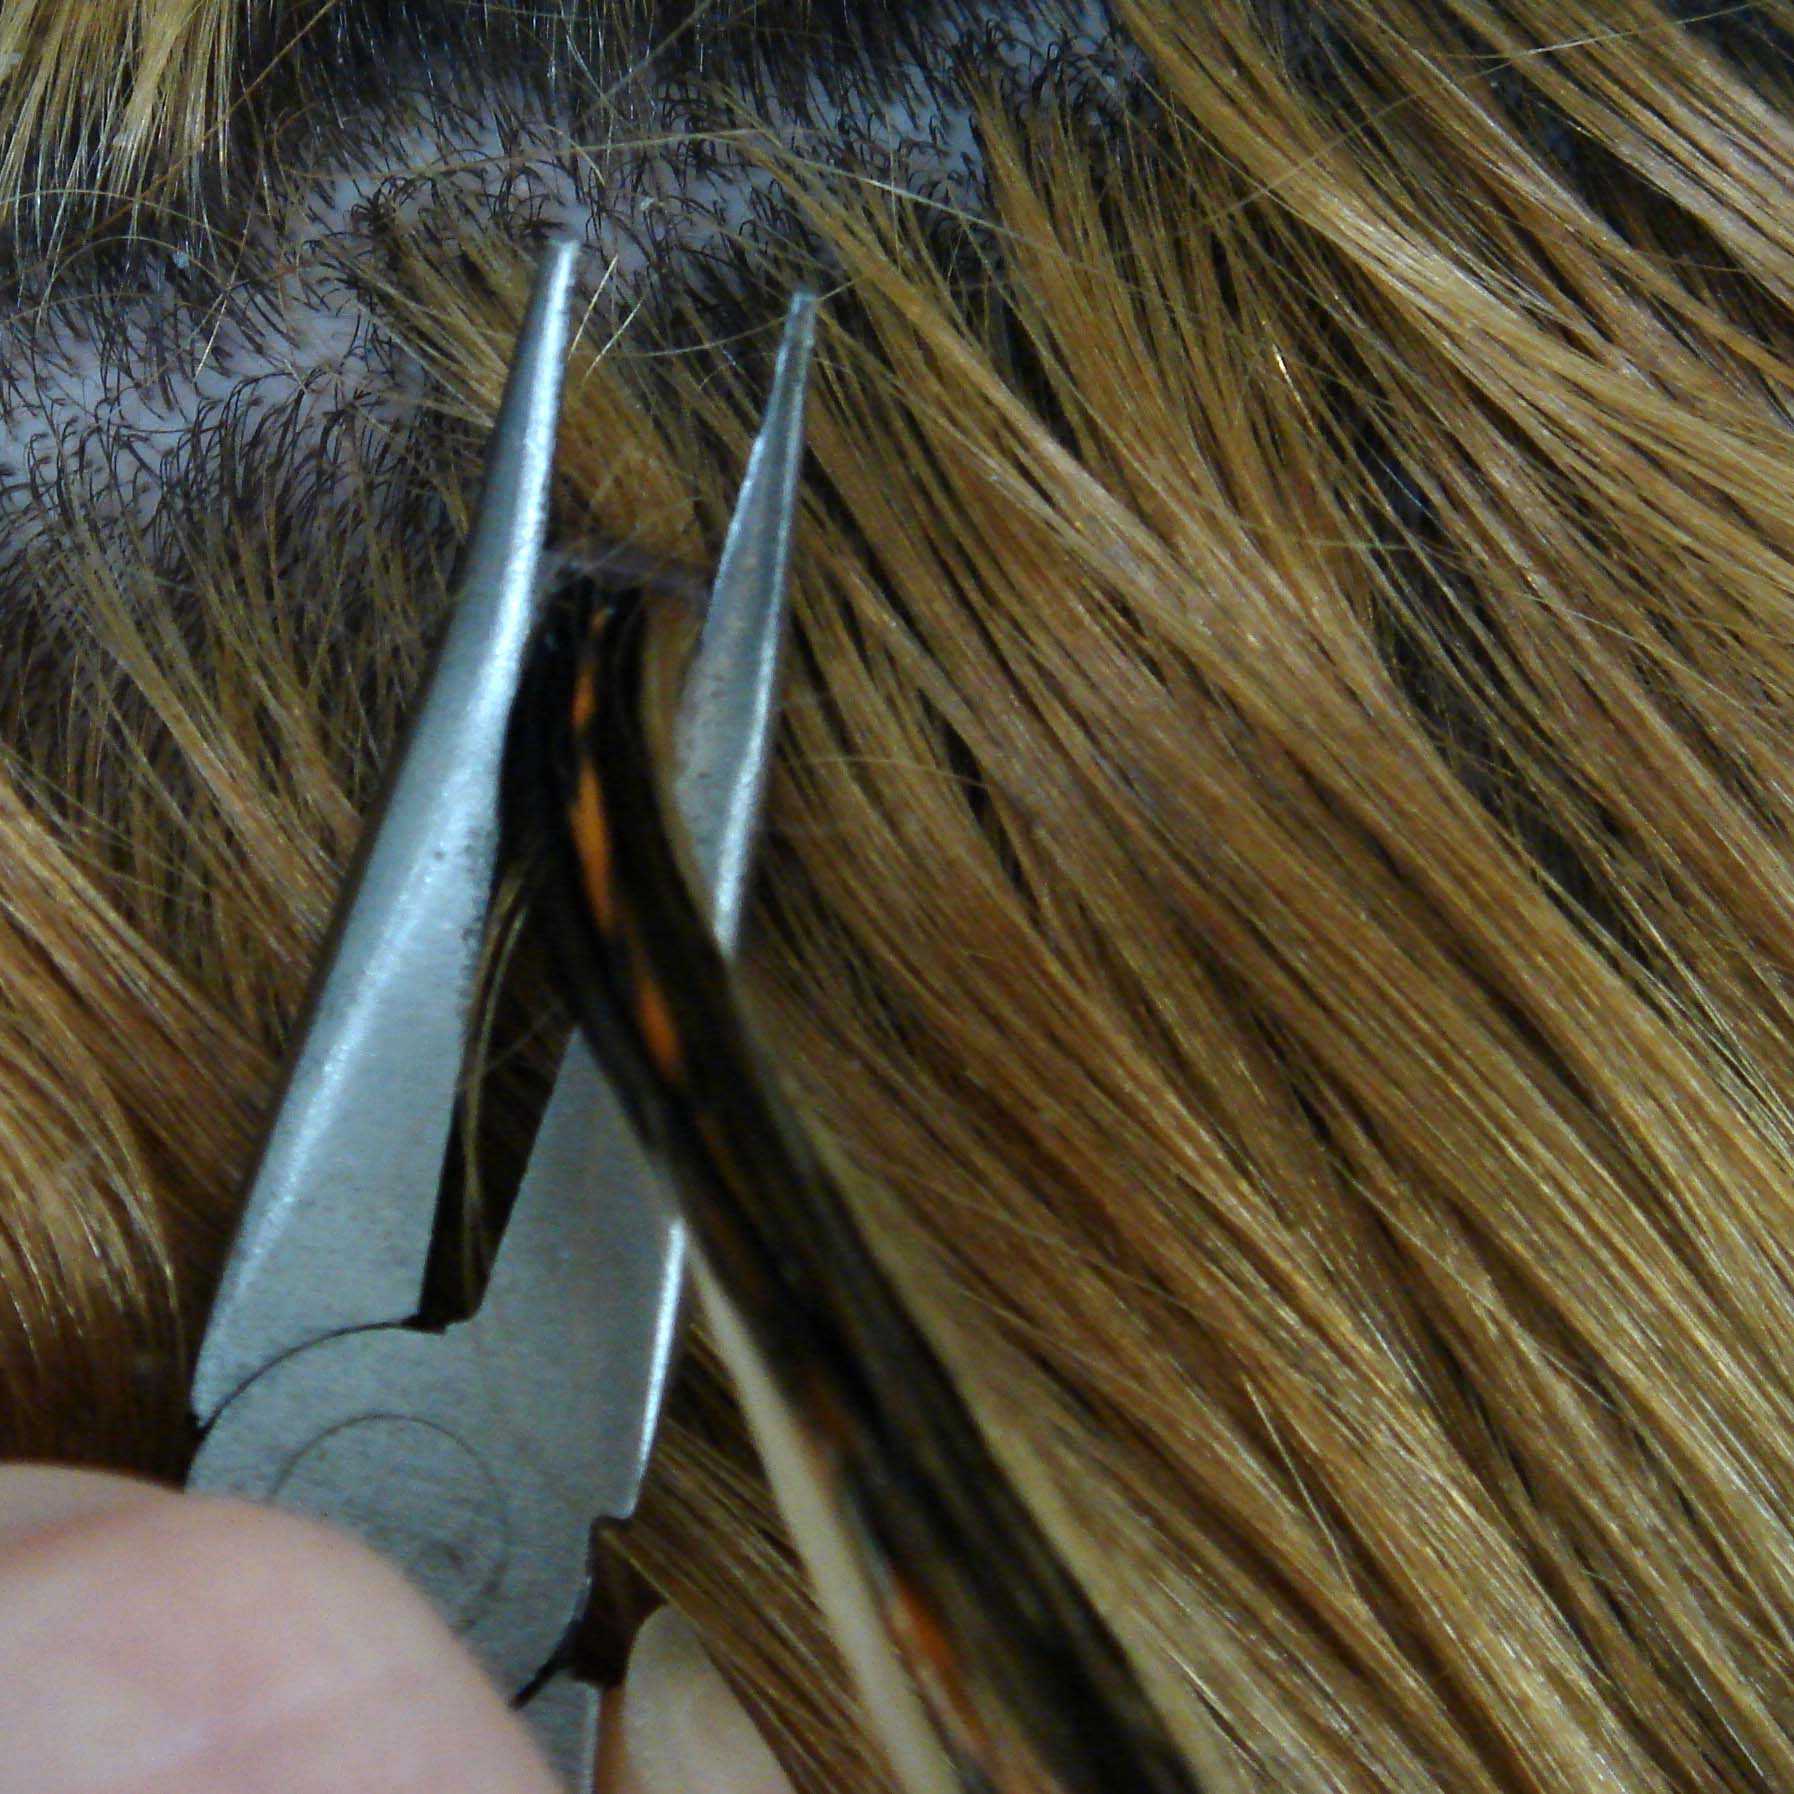 Как убрать остатки кератина с волос после наращивания. можно ли самостоятельно снять ленточное наращивание? видео – все о нарощенных волосах, как снять нарощенные волосы самостоятельно